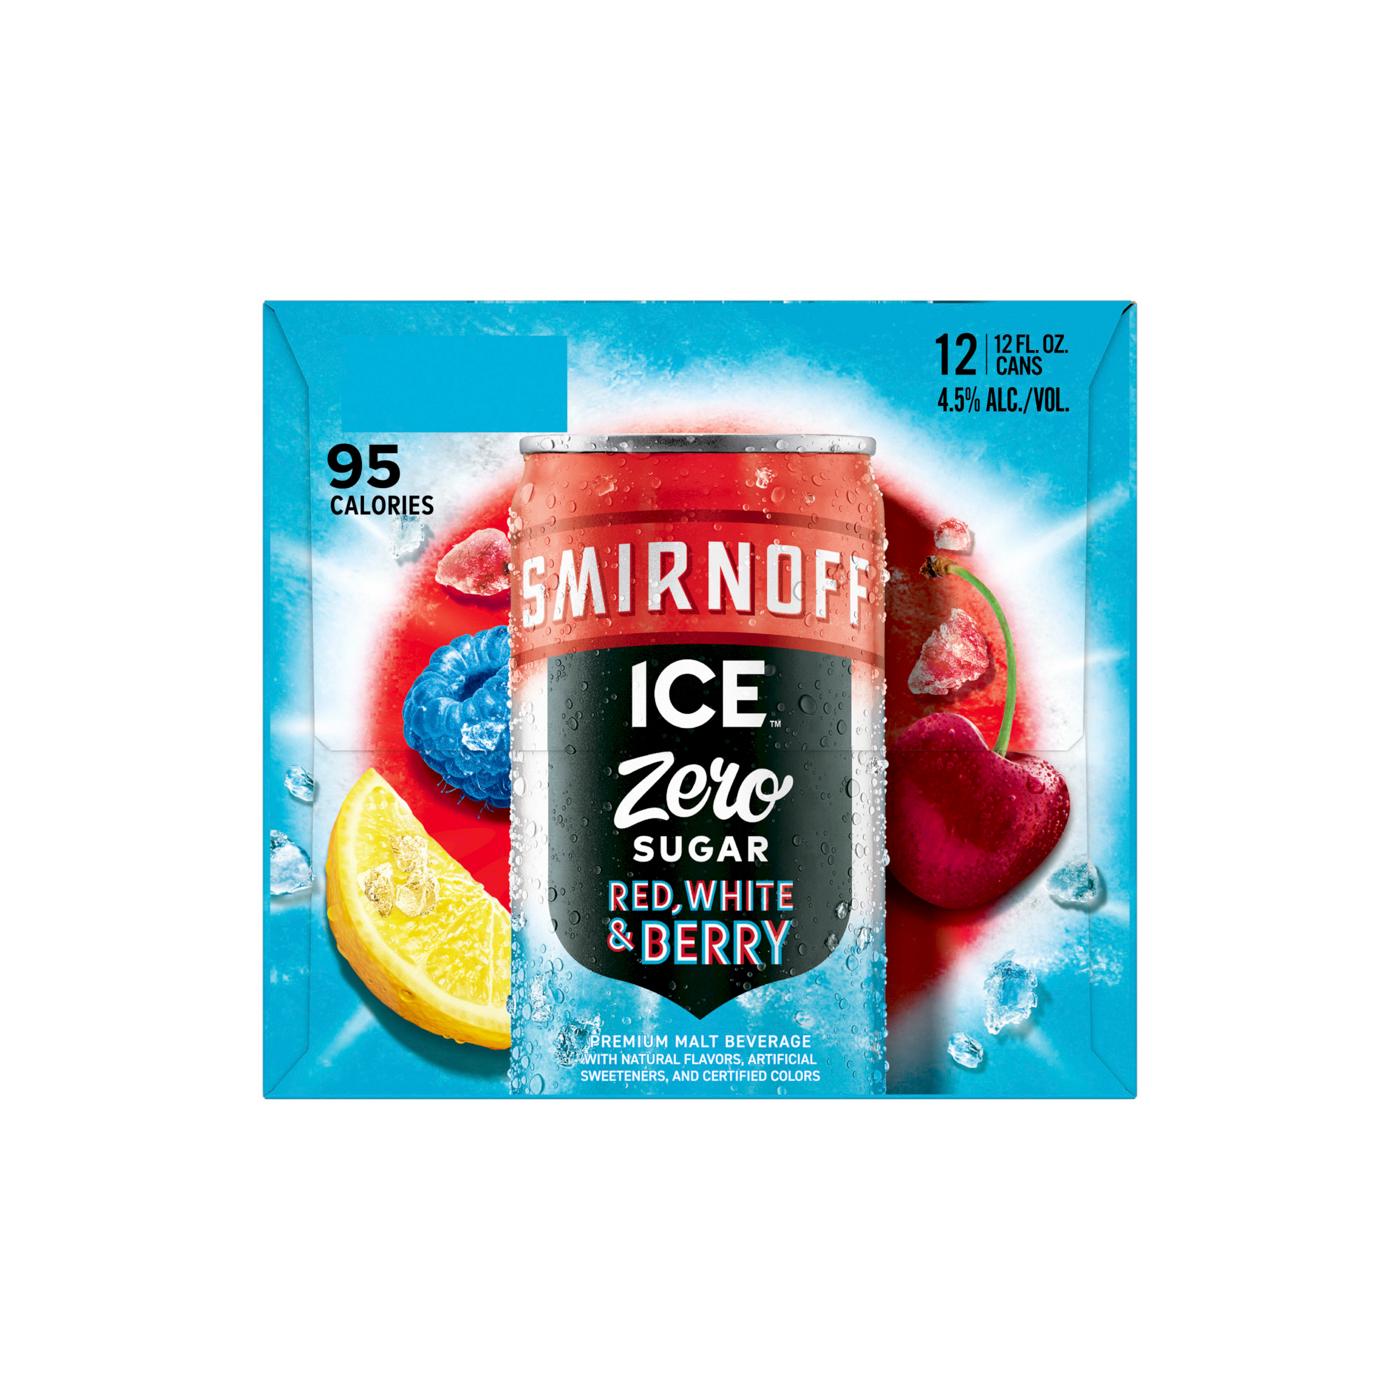 Smirnoff Ice Zero Sugar Red, White, Berry; image 4 of 4